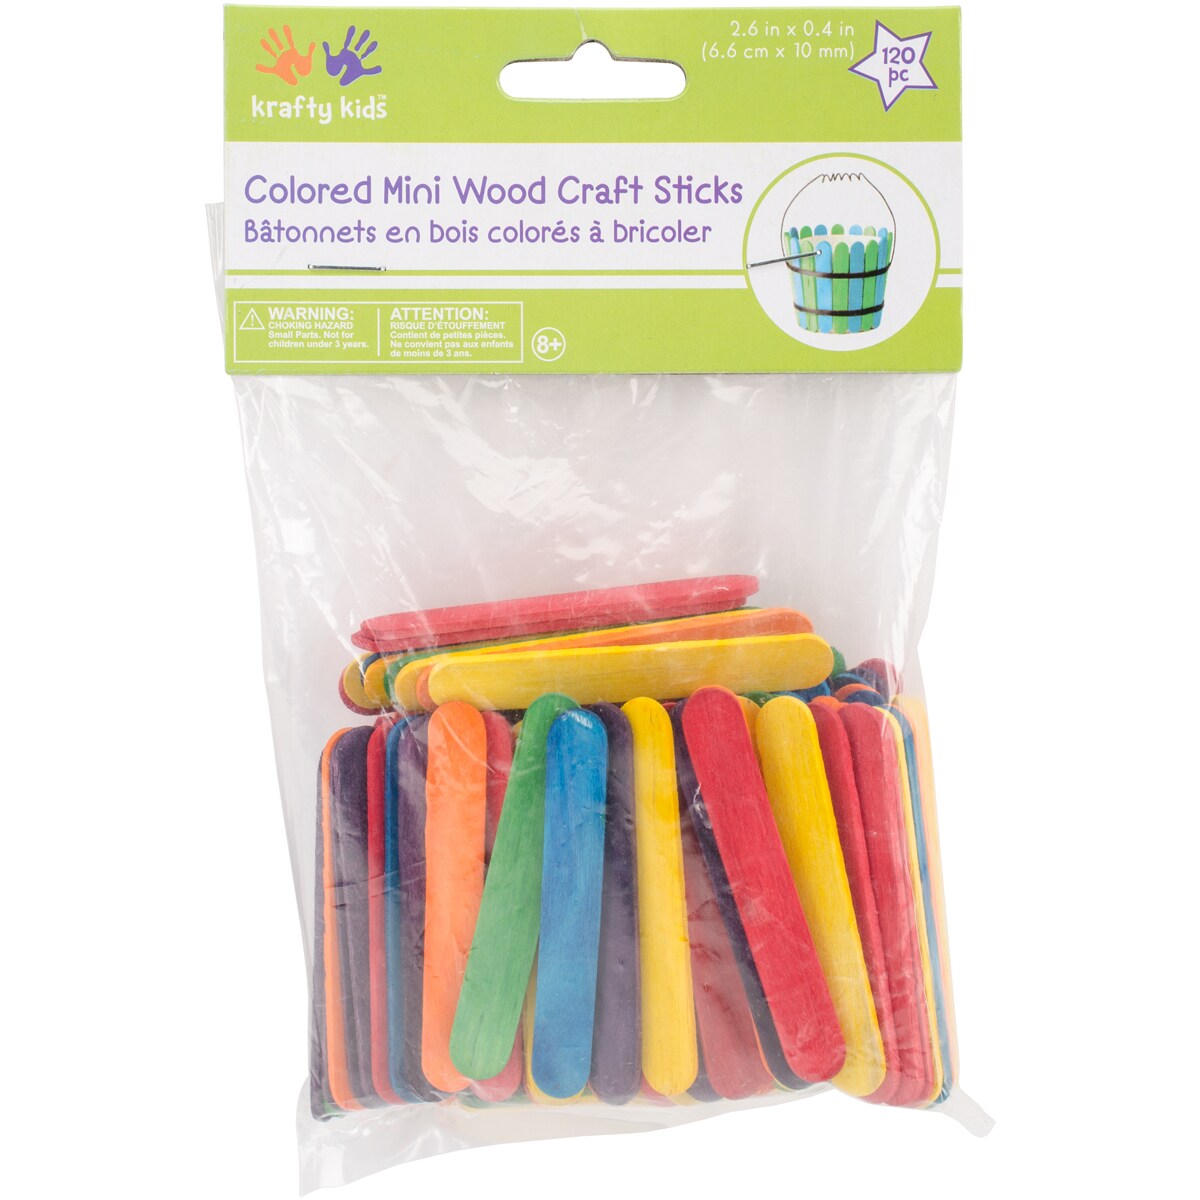 Popsicle Sticks : Target